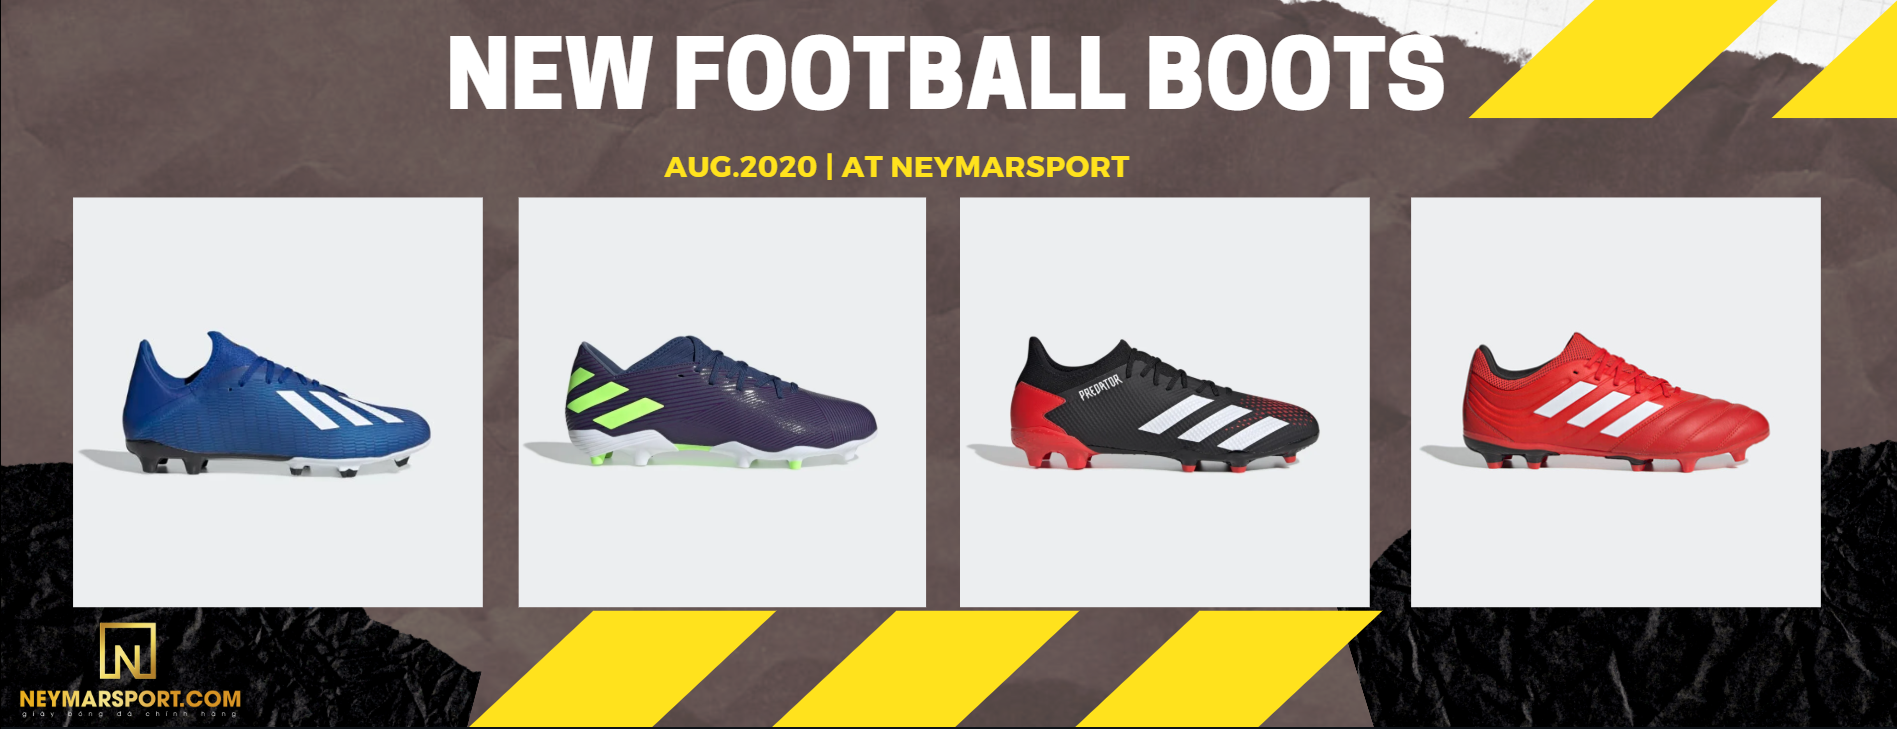 Những Mẫu Giày Cỏ Tự Nhiên Giá Rẻ Đang Lên Kệ Neymarsport Tháng 8/2020